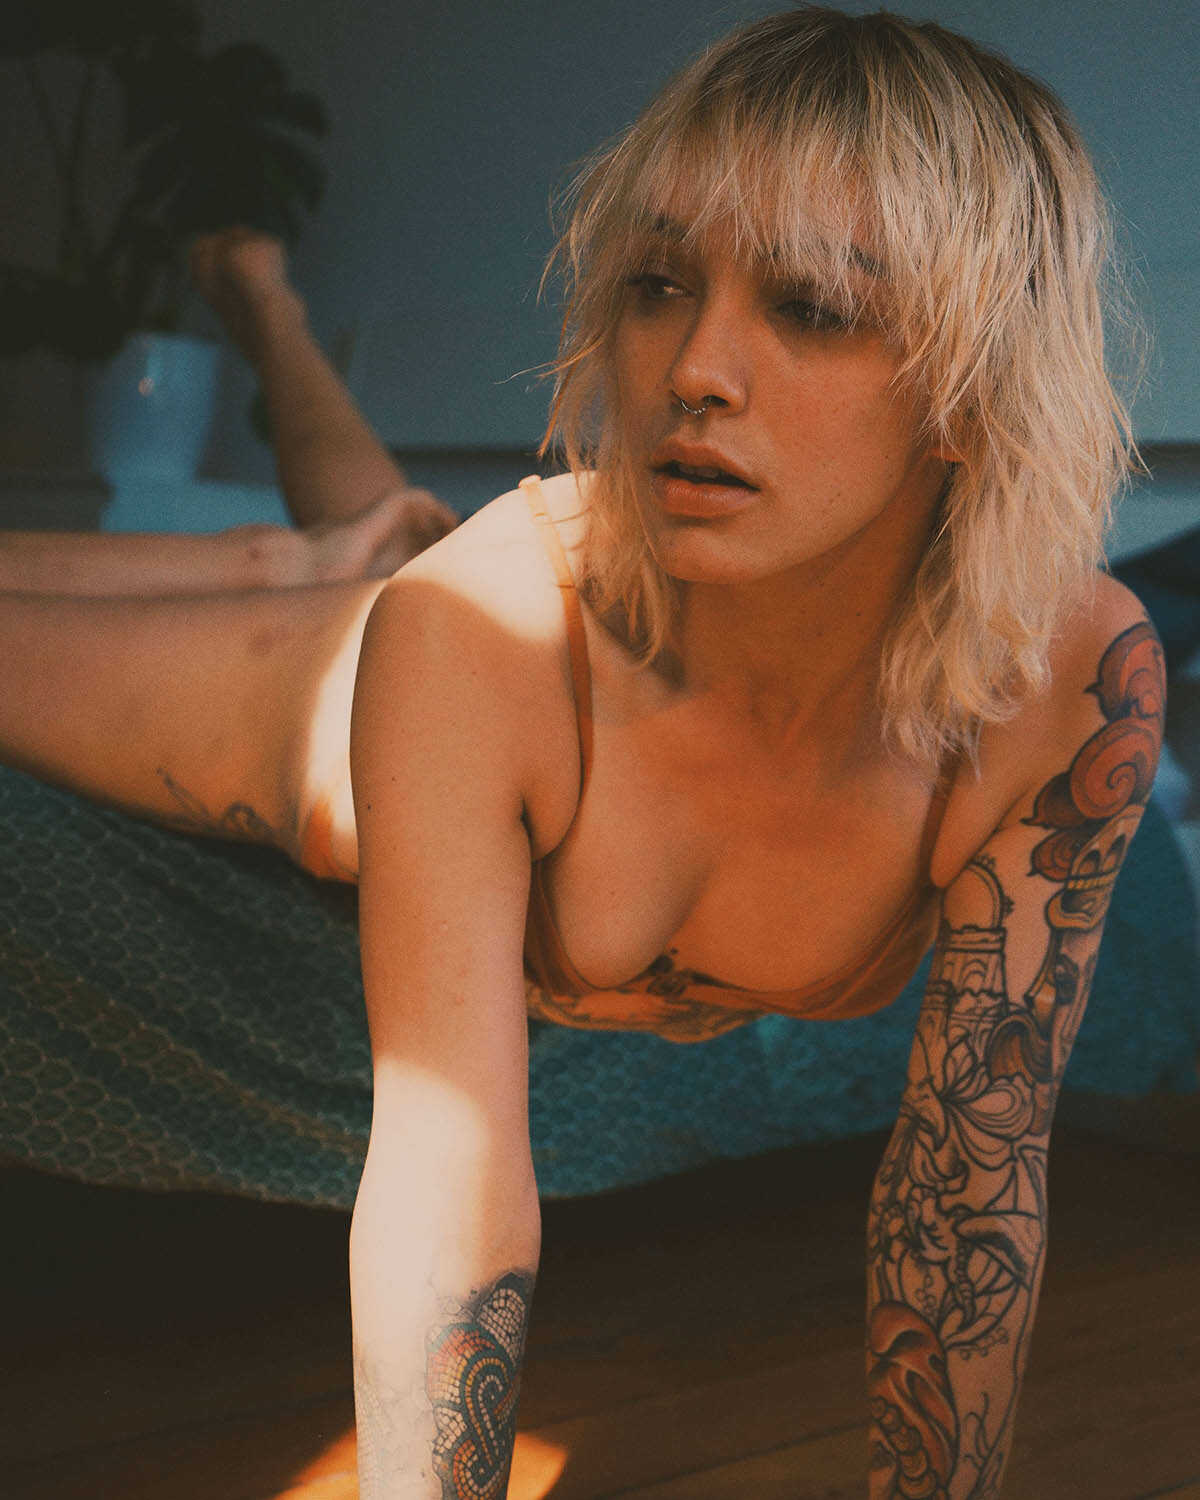 Γυμνή φωτογράφηση του γεμάτου τατουάζ σώματος της Witchy Pixie